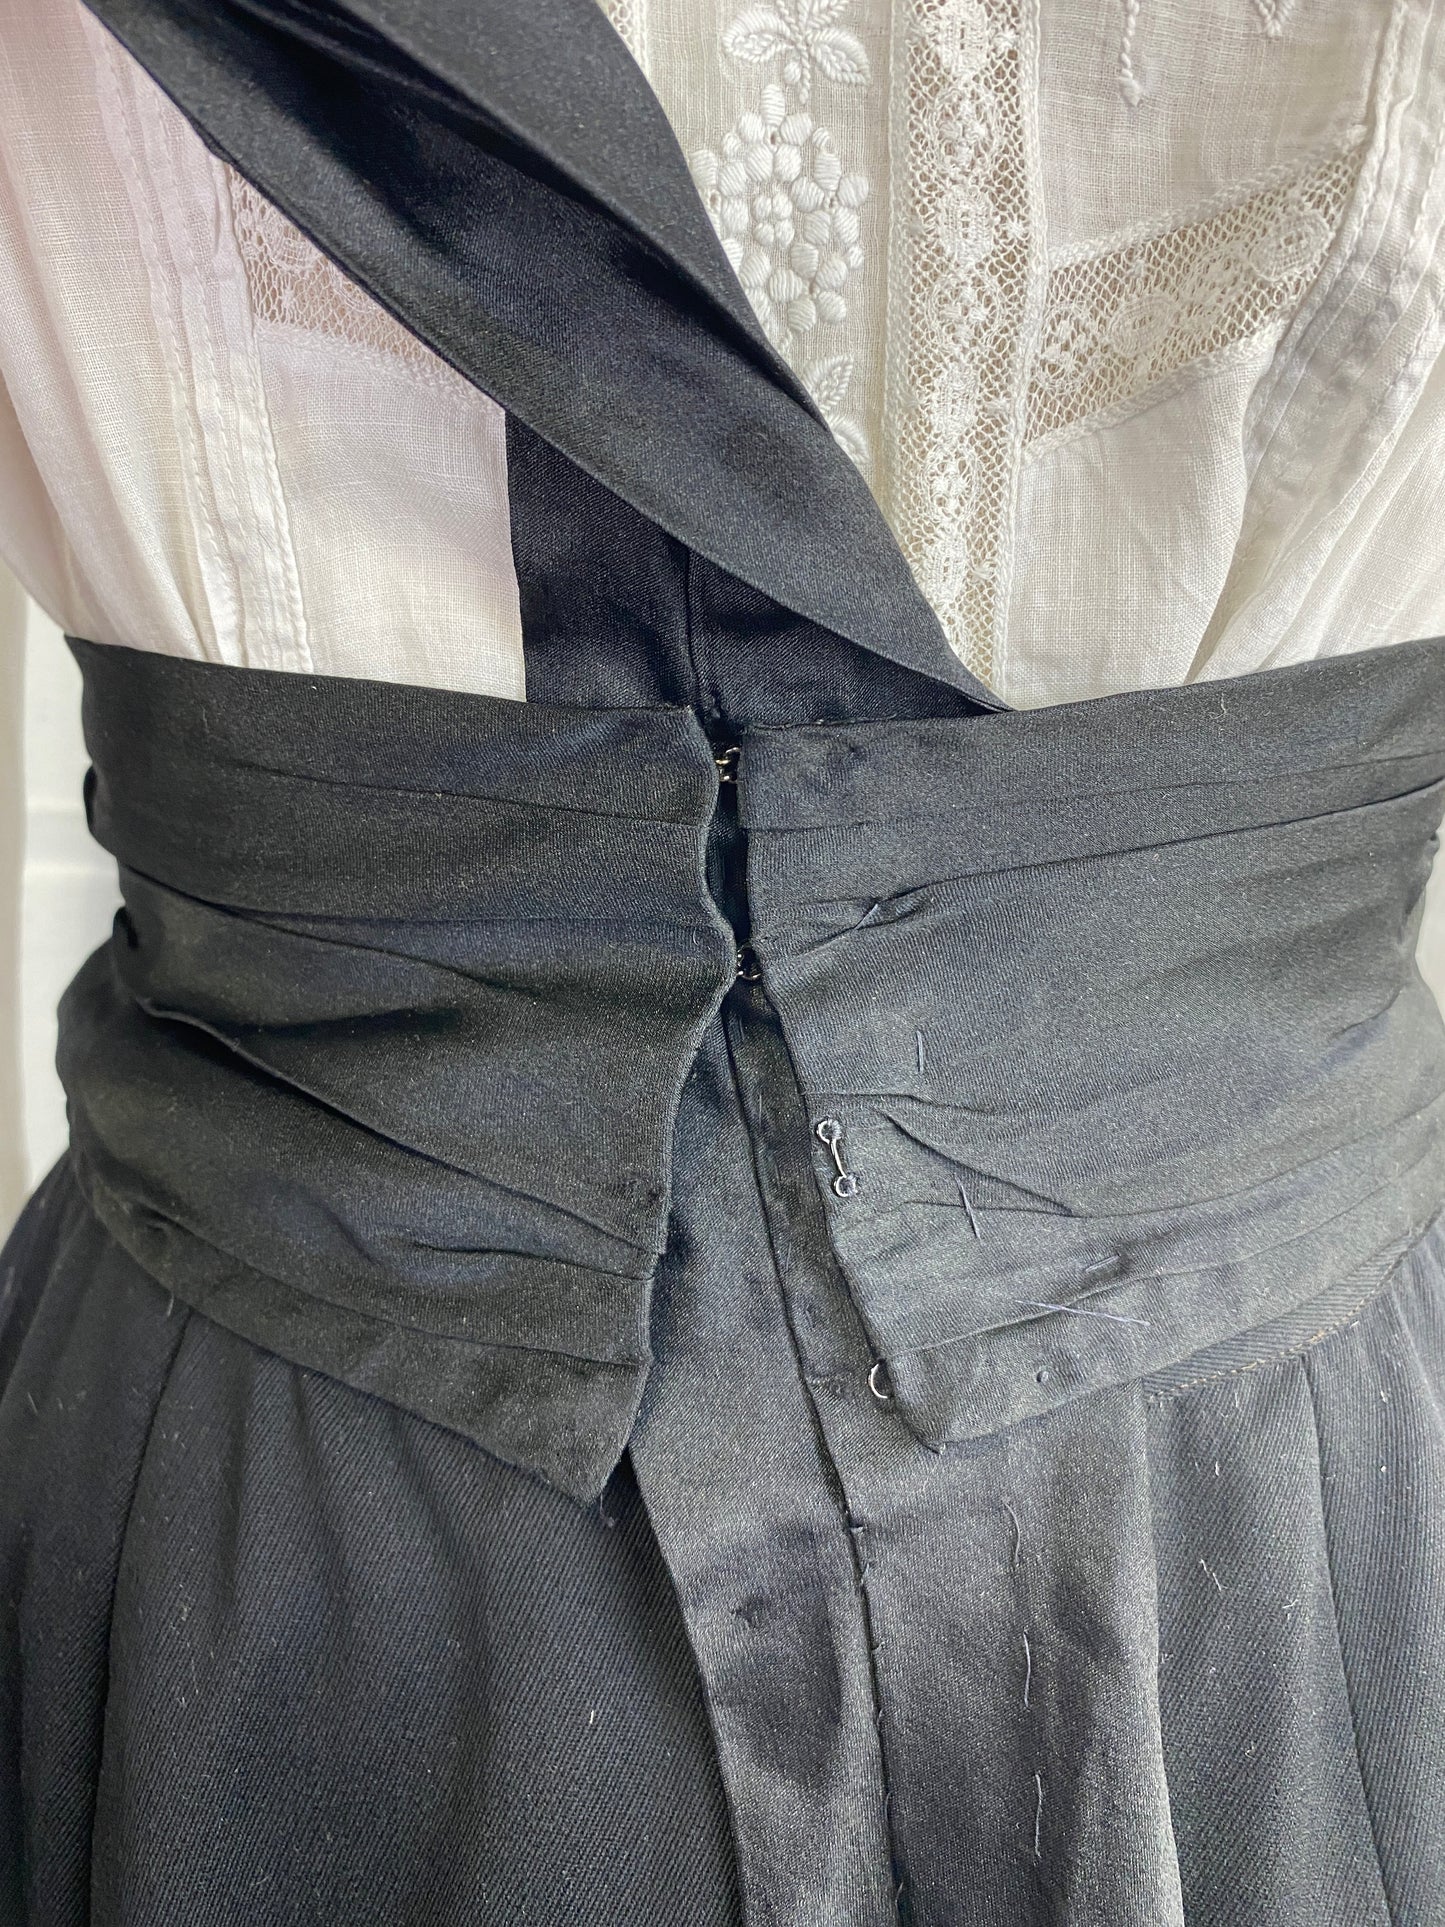 Antique Victorian Women's Black Satin Cummerbund Style Sash Belt, 24"